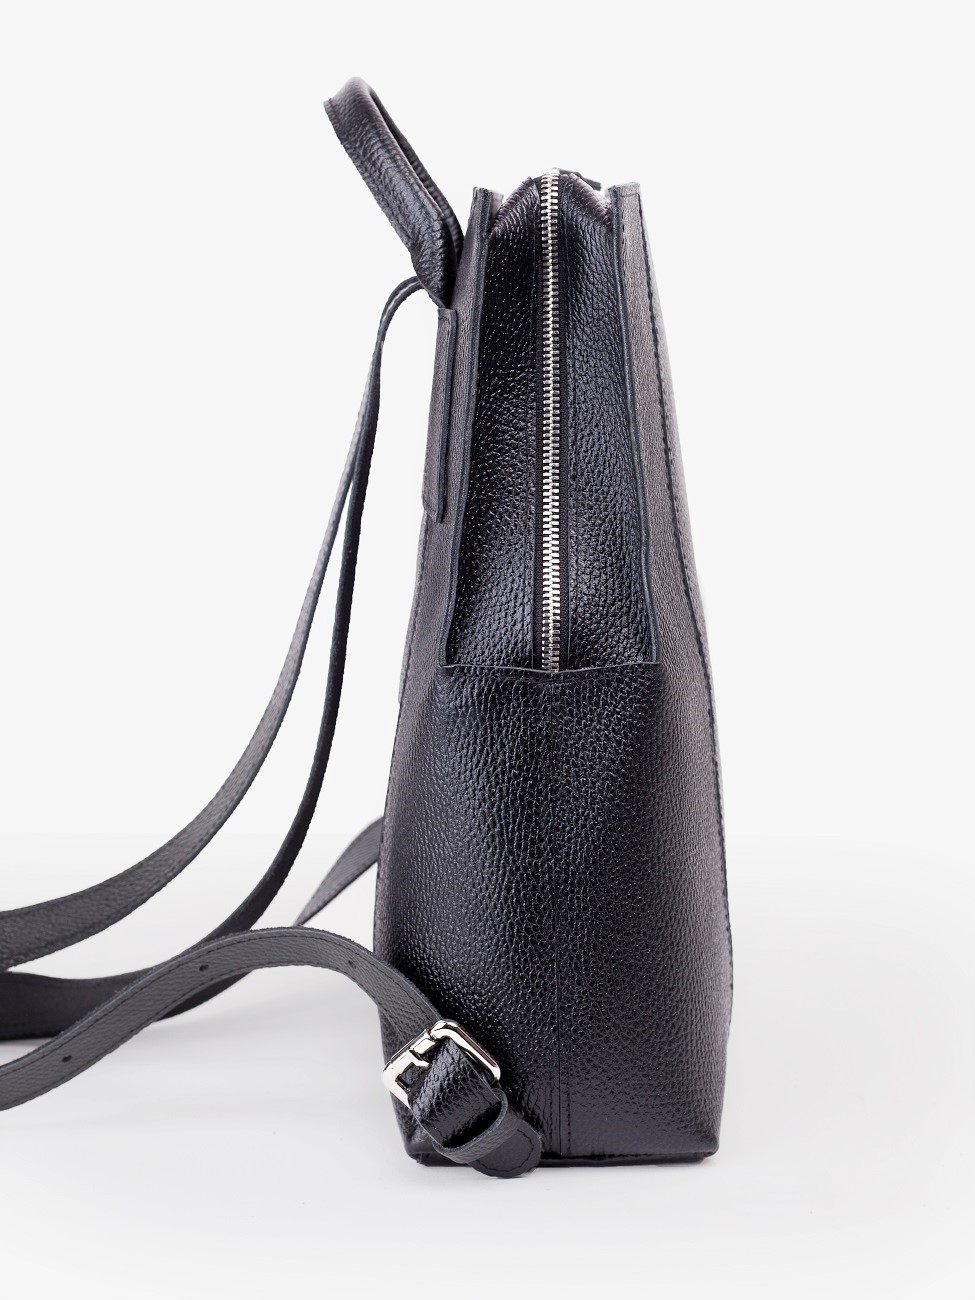 Женский рюкзак из натуральной кожи черный B014 black grain